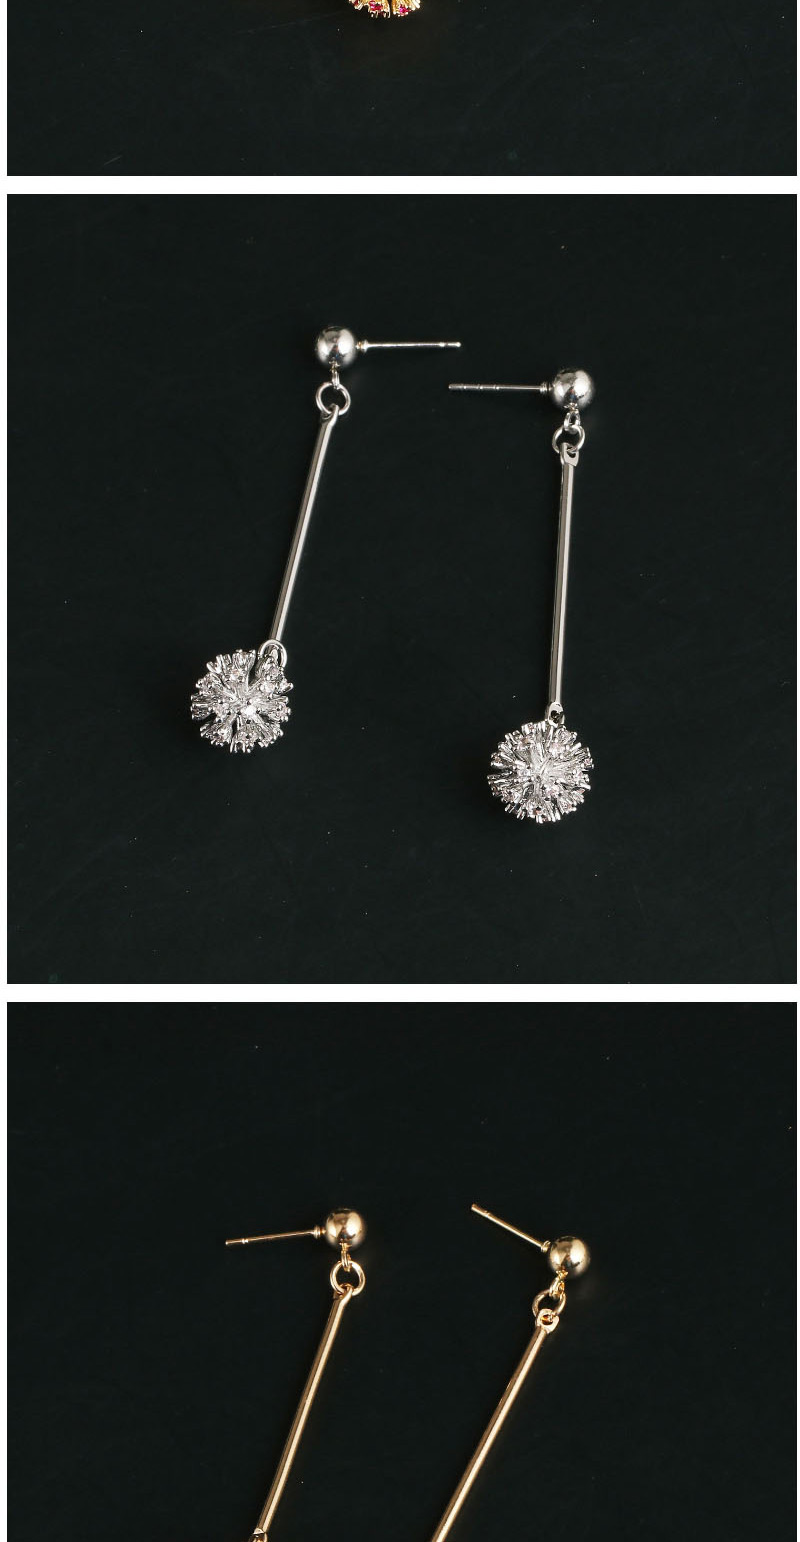 Fashion Silver + Purple Firework Alloy Notched Diamond Earrings,Stud Earrings